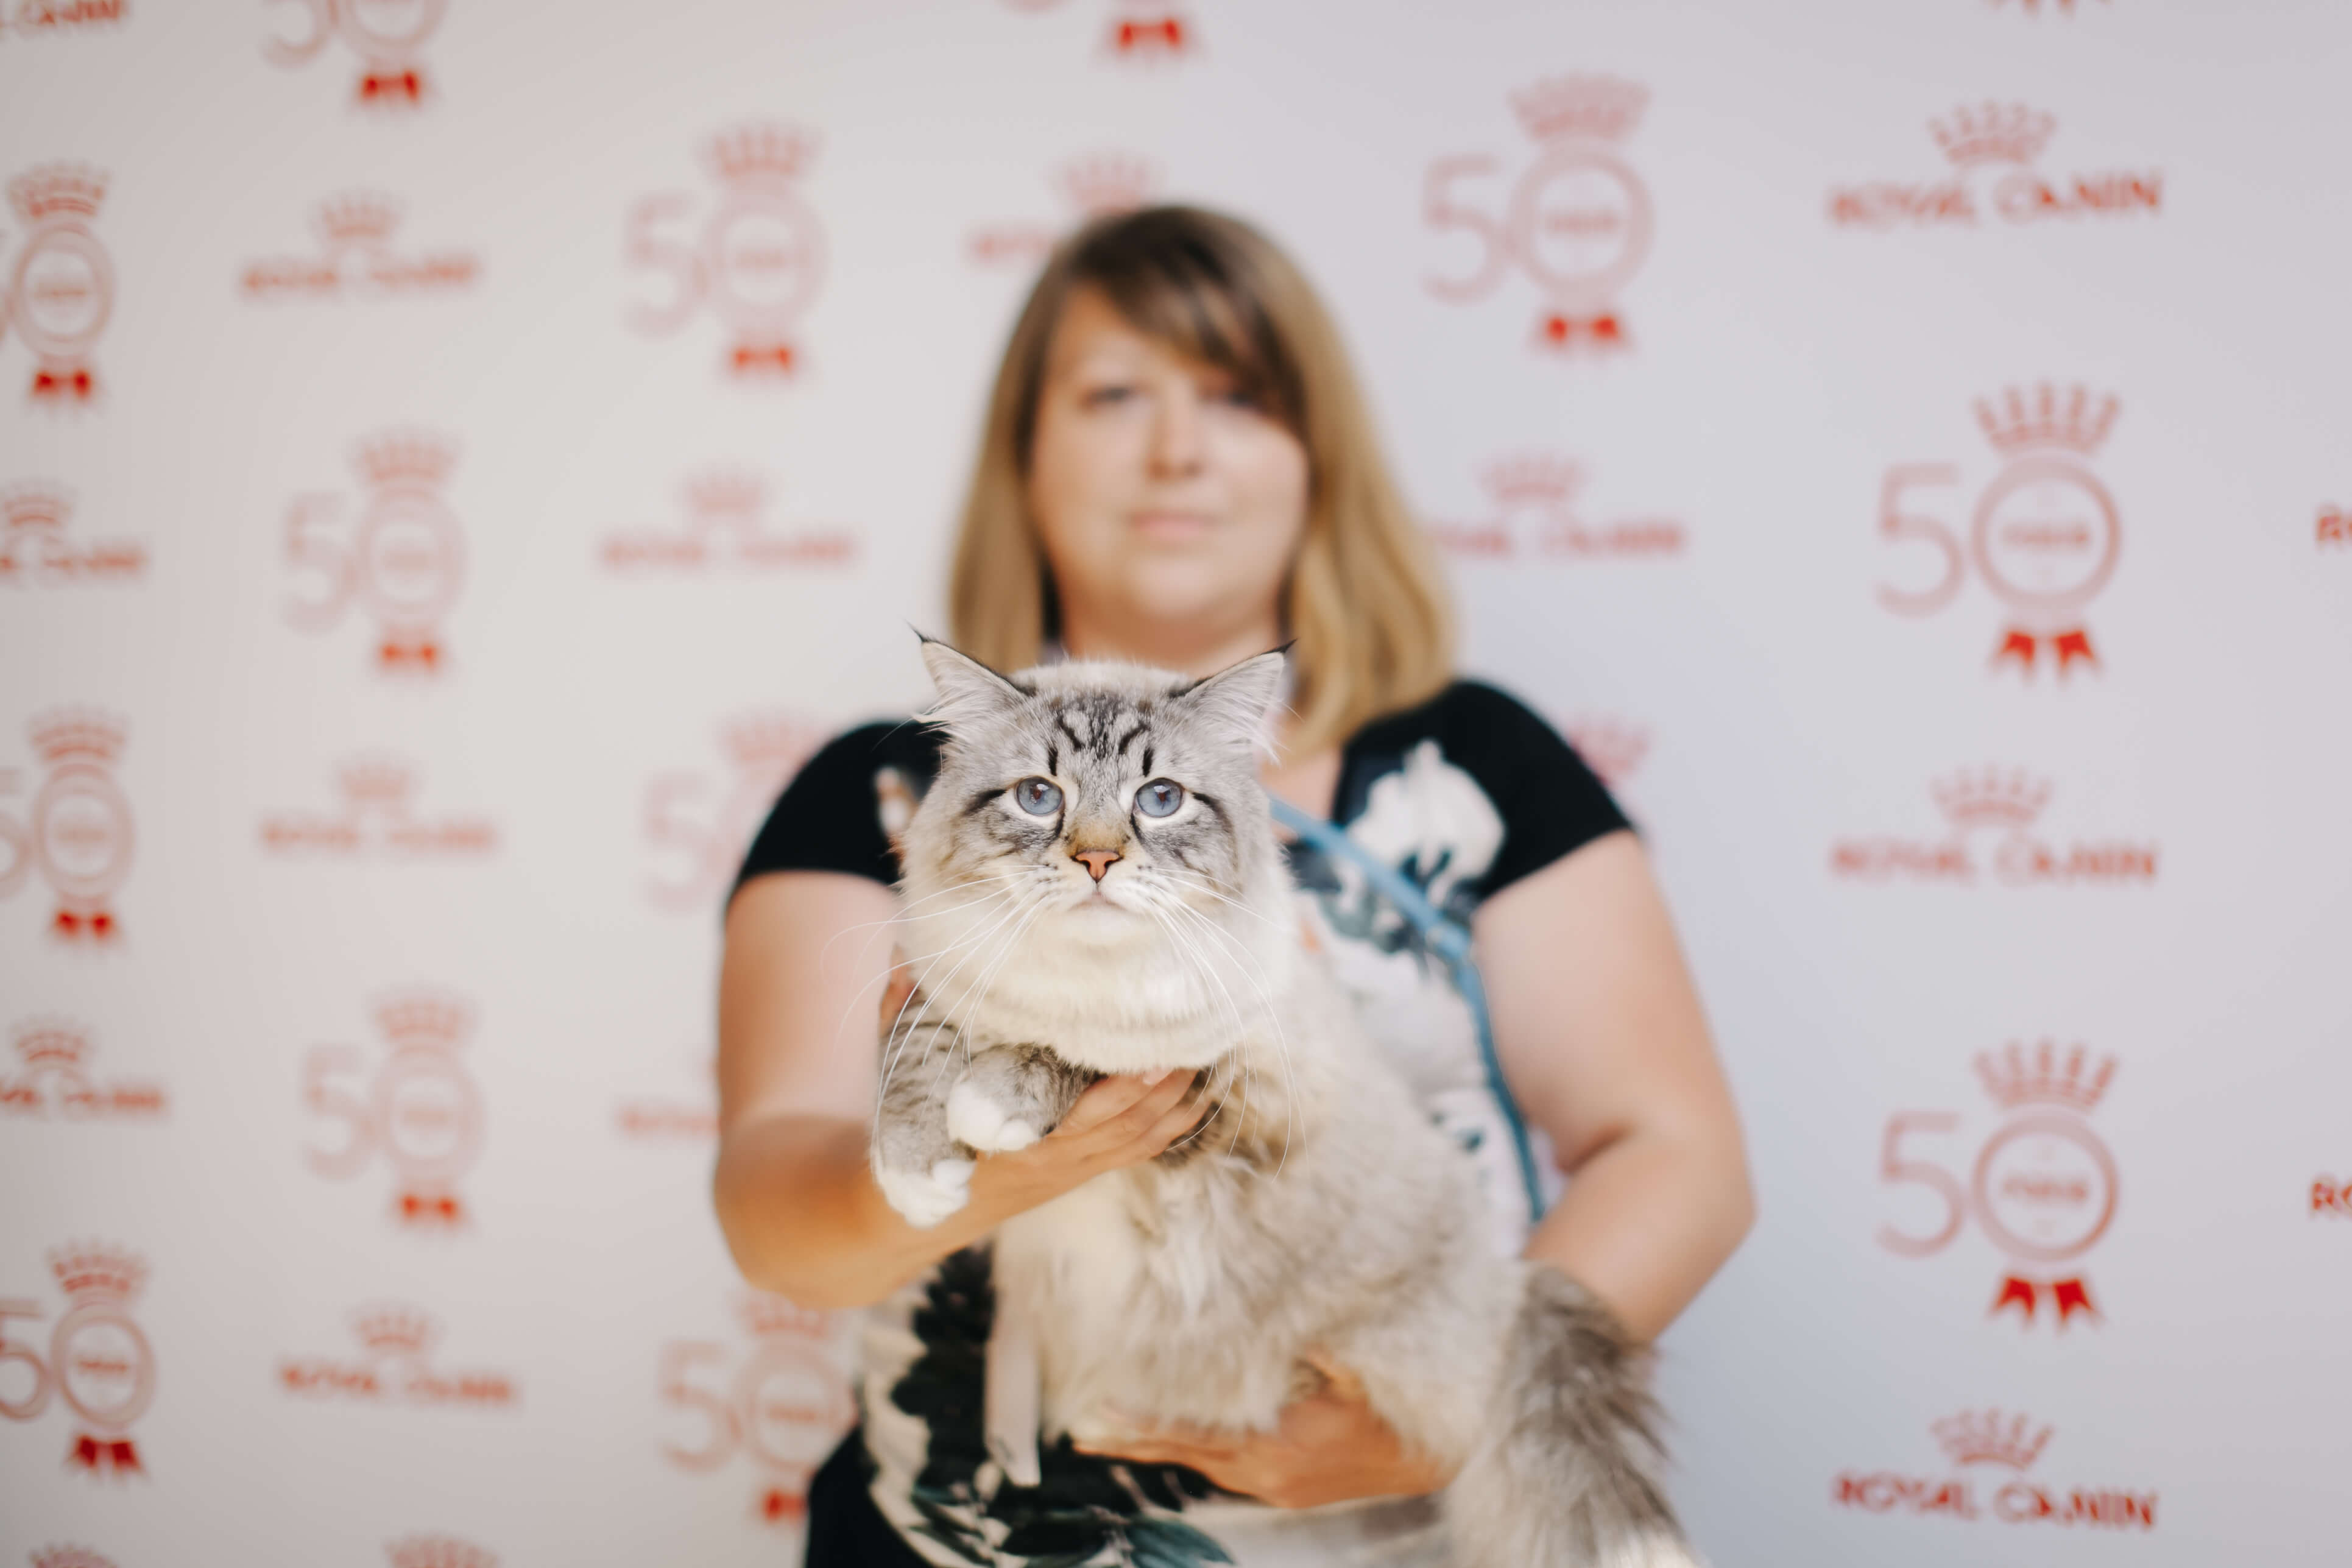 Royal Canin Cup 2018: як пройшла виставка котів в Одесі-320x180